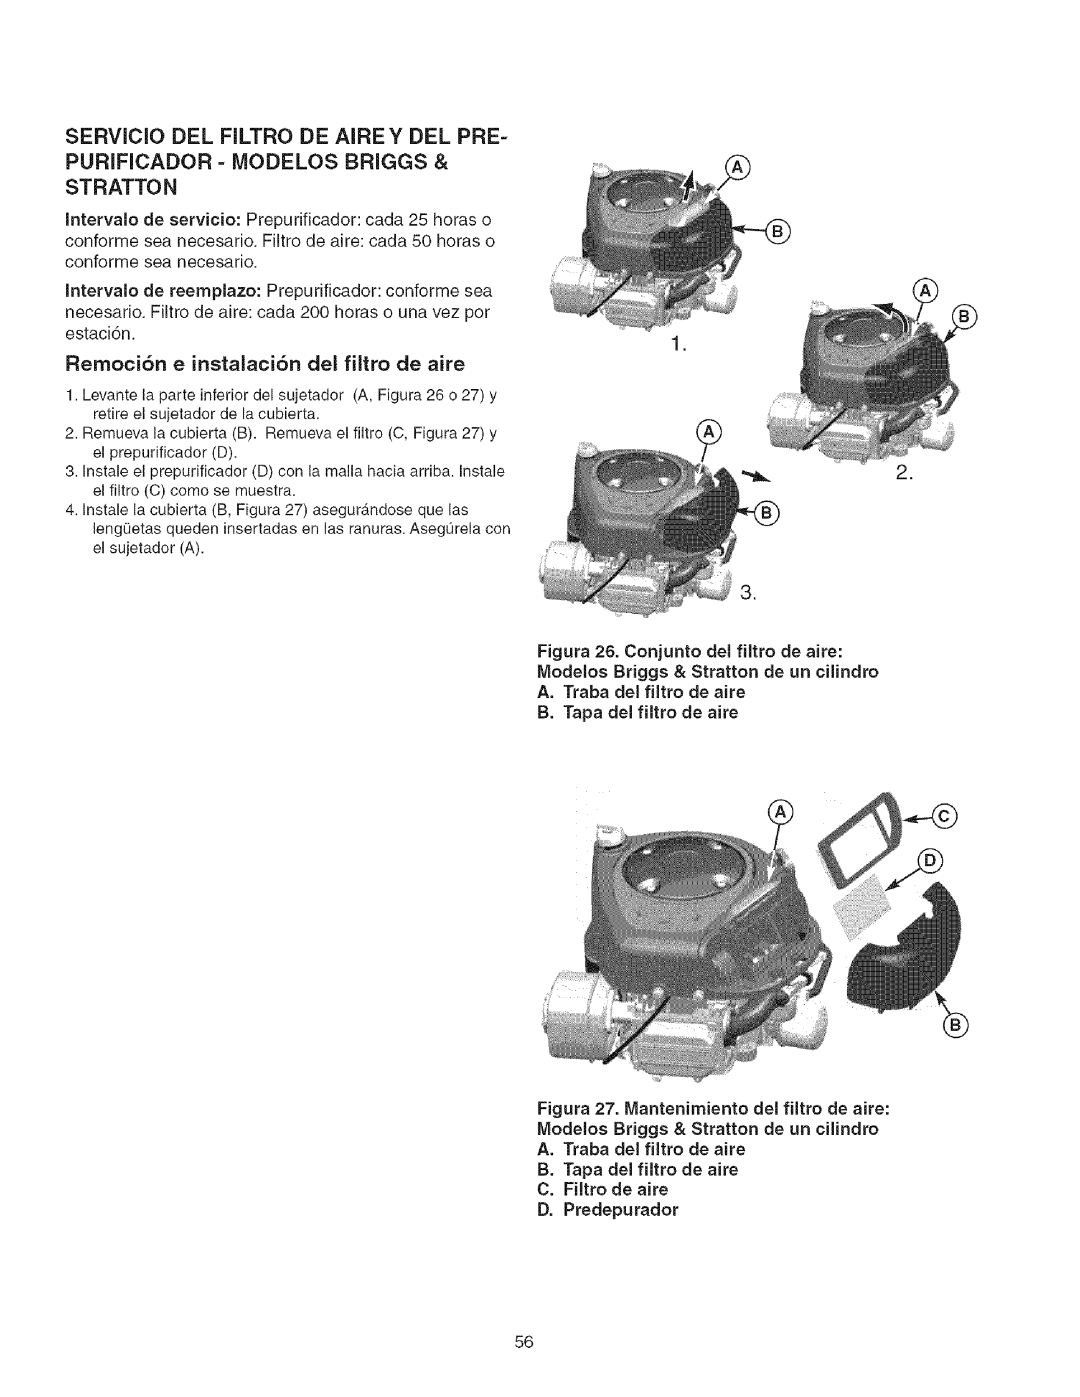 Craftsman 107.27768 manual SERVlCIO DEL FILTRO DE AIREY DEL PRE, Purificador - Iviodelos Briggs & Stratton, D. Predepurador 